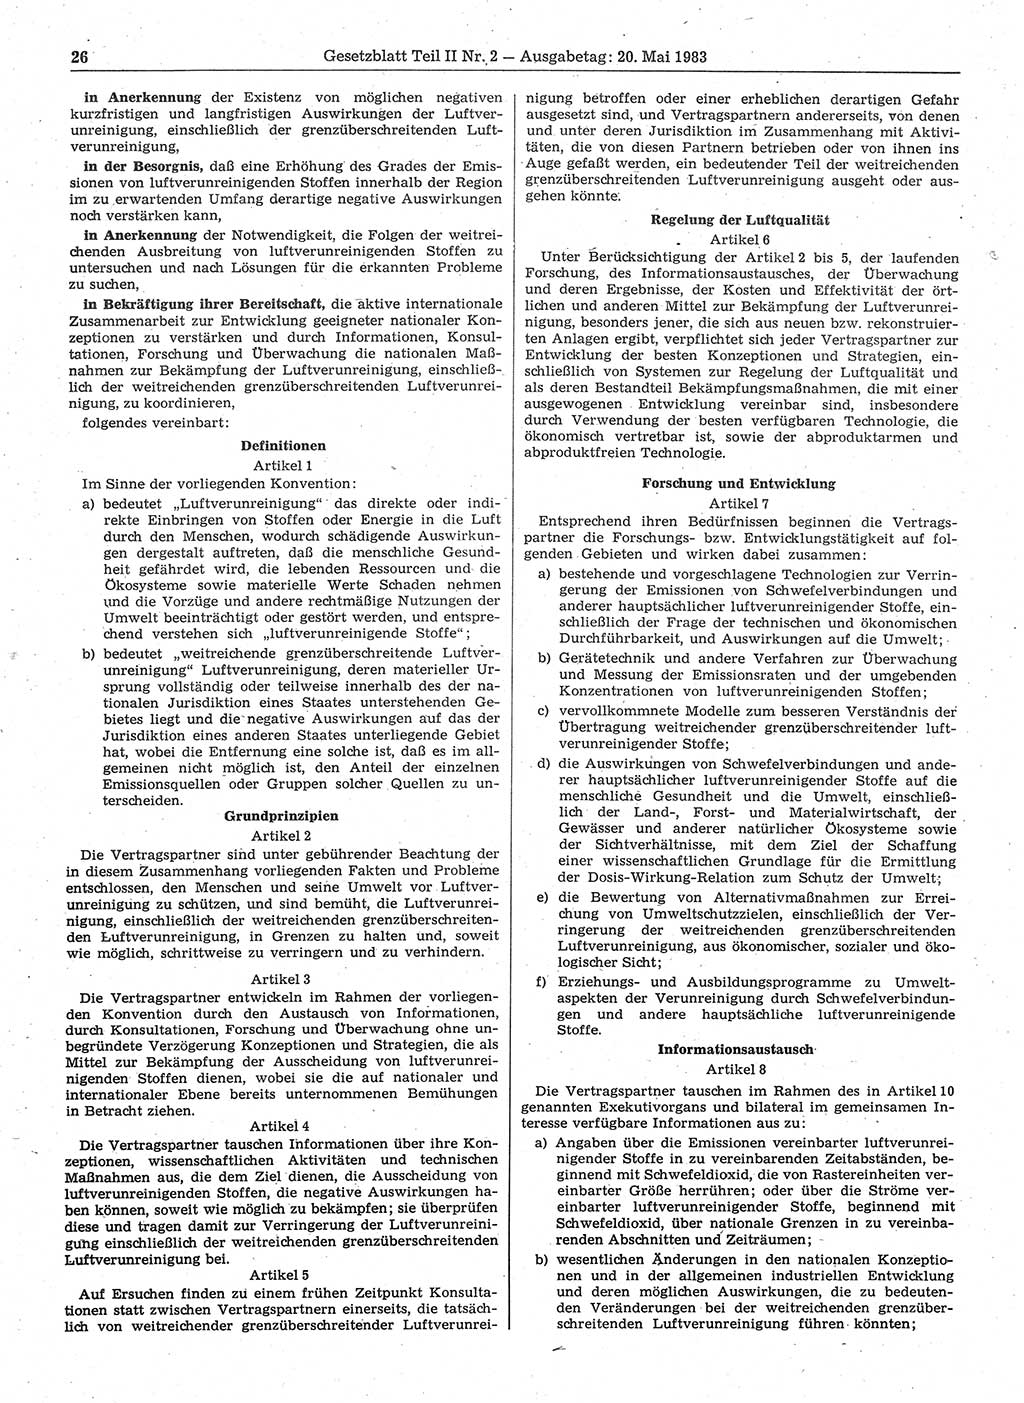 Gesetzblatt (GBl.) der Deutschen Demokratischen Republik (DDR) Teil ⅠⅠ 1983, Seite 26 (GBl. DDR ⅠⅠ 1983, S. 26)